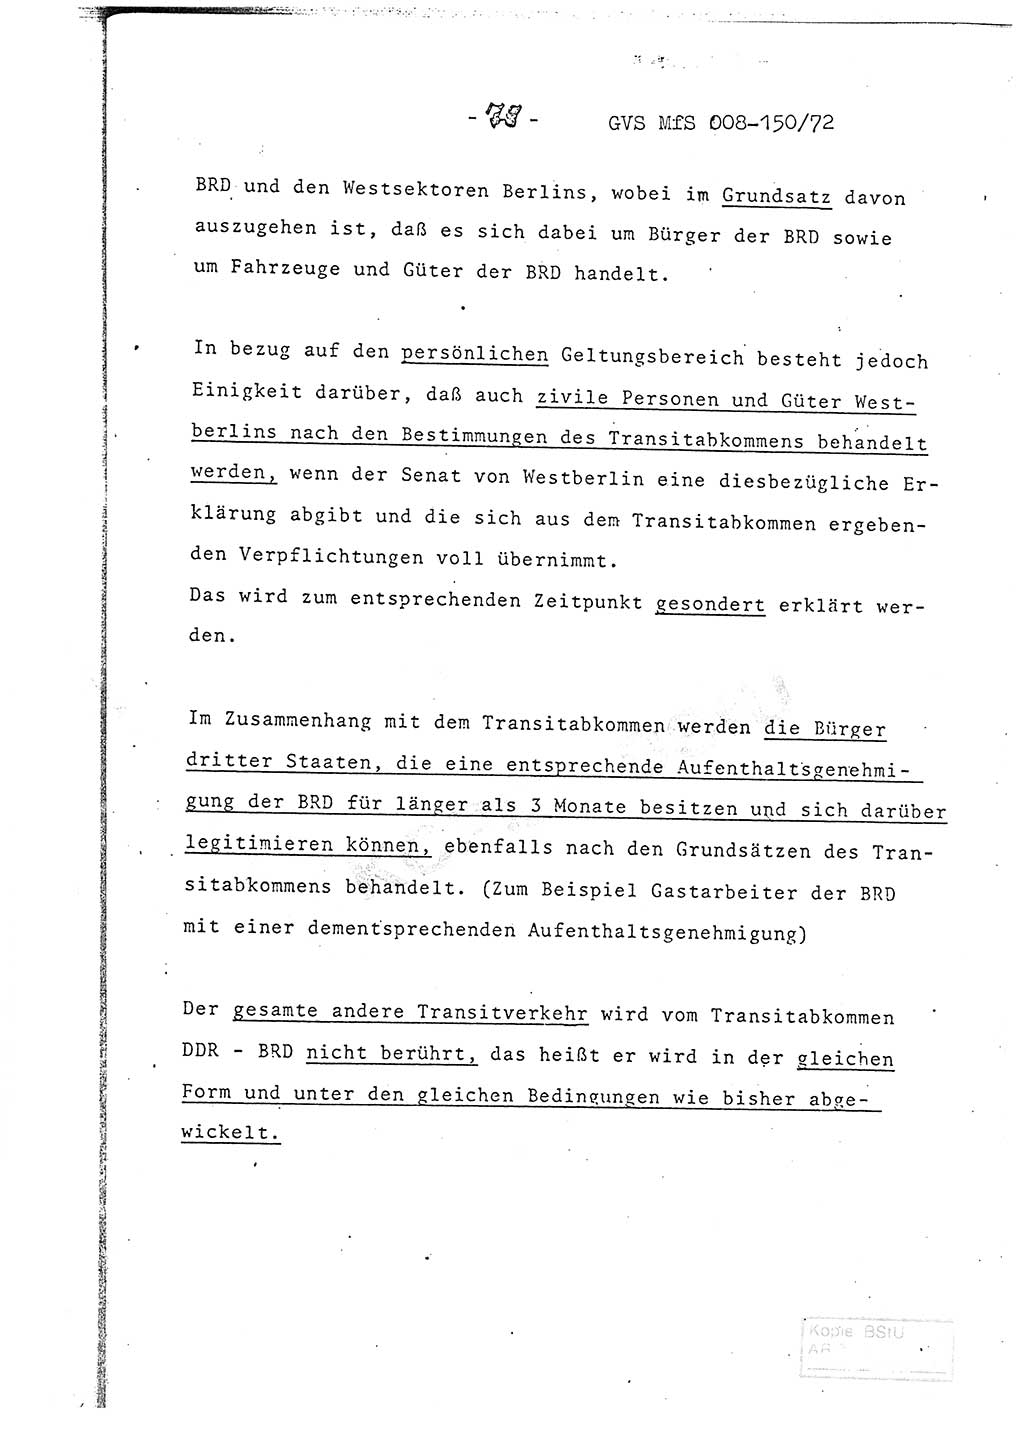 Referat (Entwurf) des Genossen Minister (Generaloberst Erich Mielke) auf der Dienstkonferenz 1972, Ministerium für Staatssicherheit (MfS) [Deutsche Demokratische Republik (DDR)], Der Minister, Geheime Verschlußsache (GVS) 008-150/72, Berlin 25.2.1972, Seite 79 (Ref. Entw. DK MfS DDR Min. GVS 008-150/72 1972, S. 79)